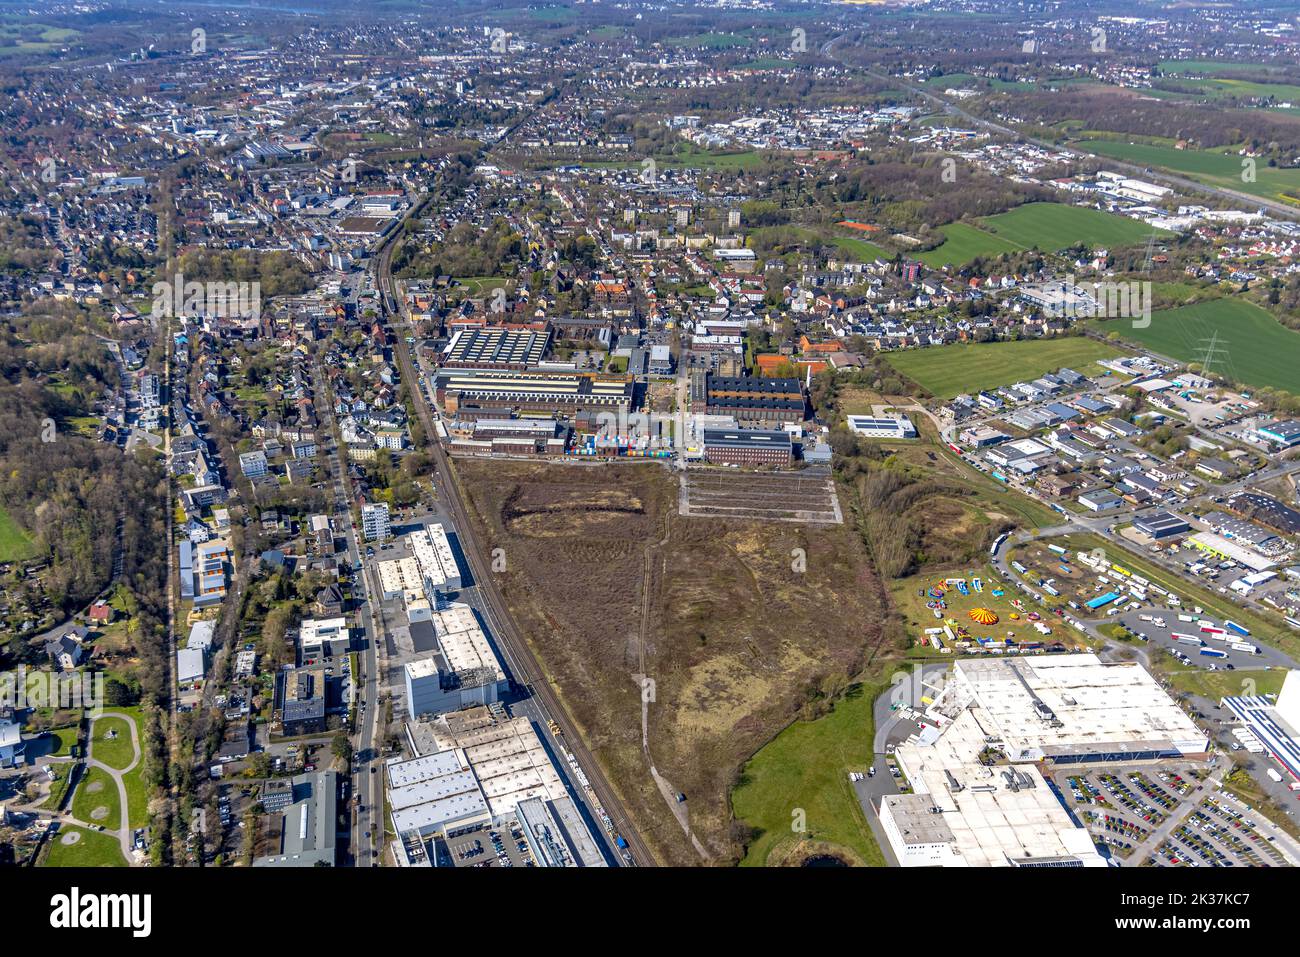 Vista aérea, vista de Annen con el área industrial Stockumer Straße, Witten, área de Ruhr, Renania del Norte-Westfalia, Alemania, DE, Europa, Fotografía aérea, Foto de stock